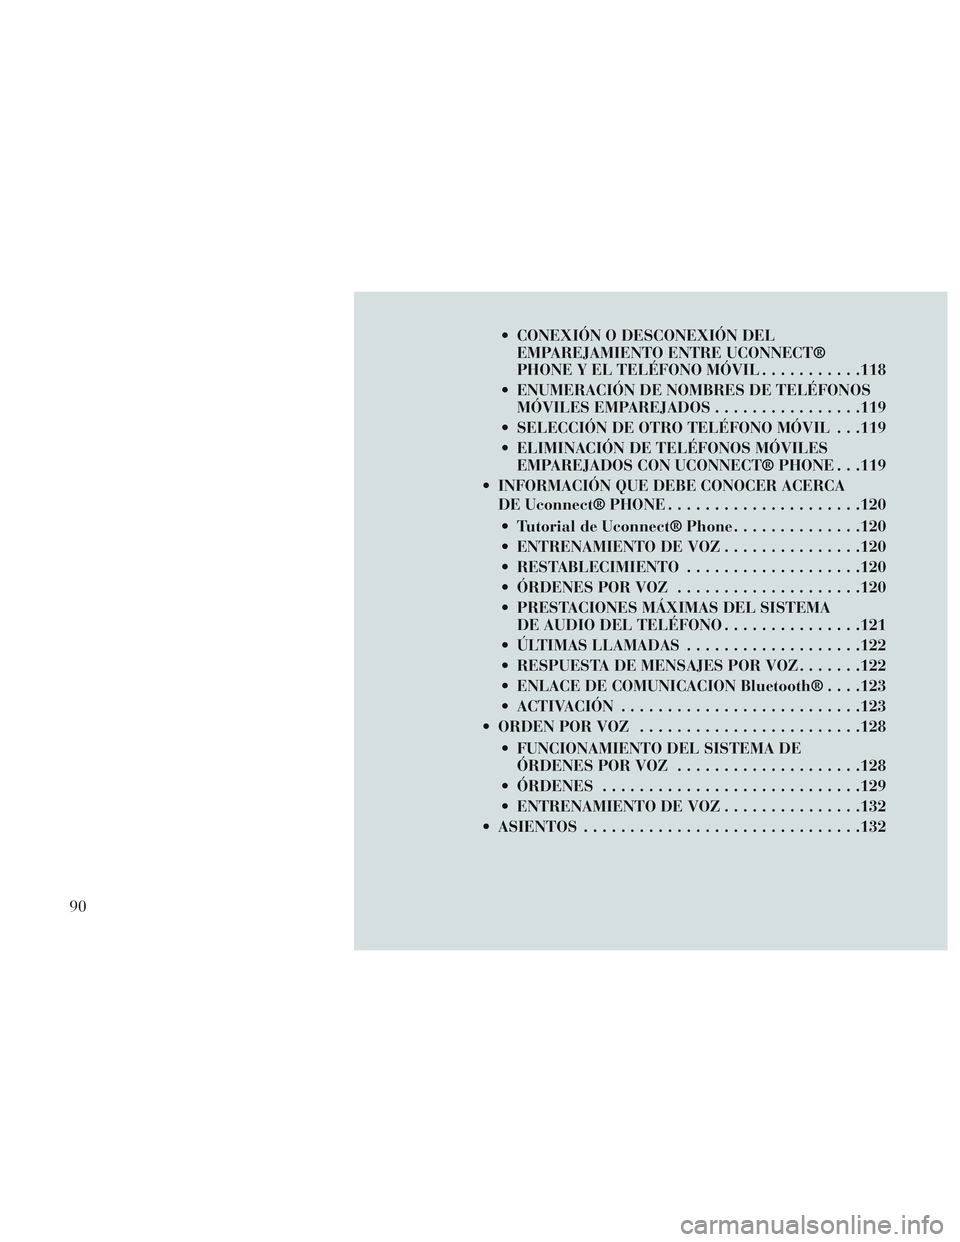 Lancia Voyager 2014  Manual de Empleo y Cuidado (in Spanish)  CONEXIÓN O DESCONEXIÓN DELEMPAREJAMIENTO ENTRE UCONNECT®
PHONE Y EL TELÉFONO MÓVIL ...........118
 ENUMERACIÓN DE NOMBRES DE TELÉFONOS MÓVILES EMPAREJADOS ................119
 SELECCIÓN DE O